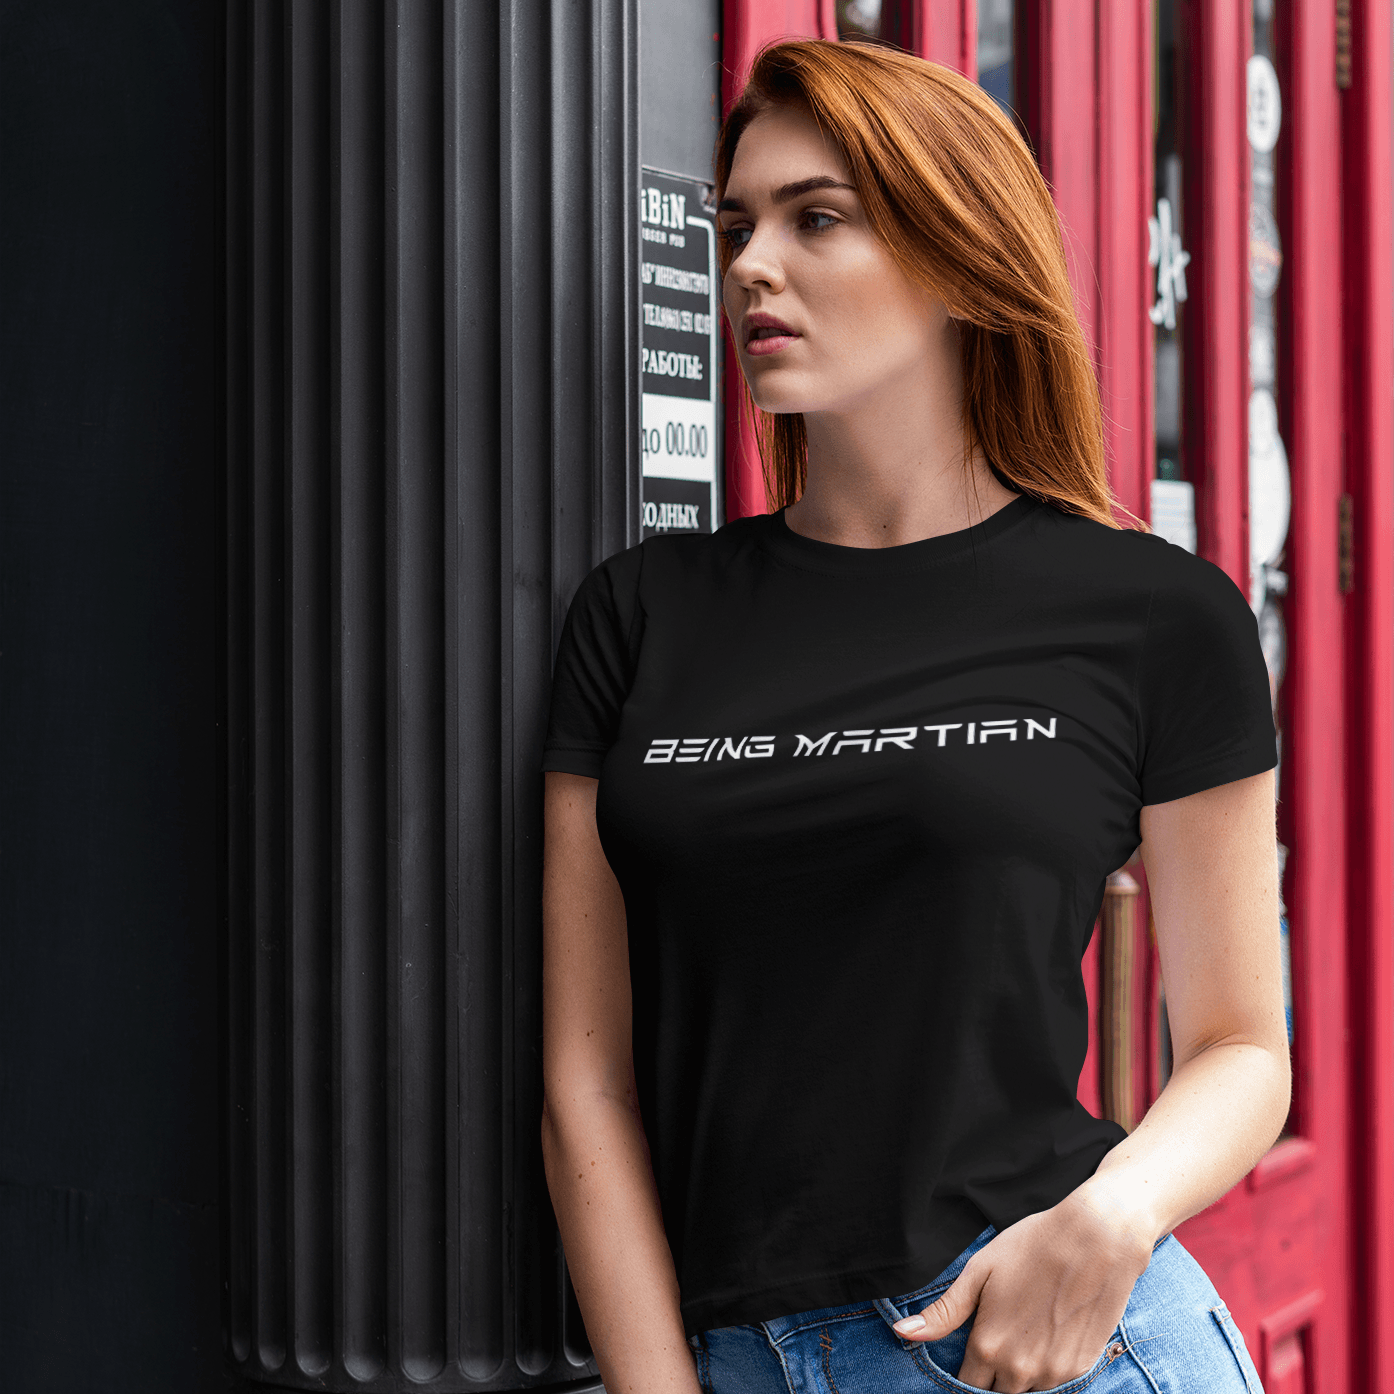 Being Martian Women's T-shirt - Ken Adams